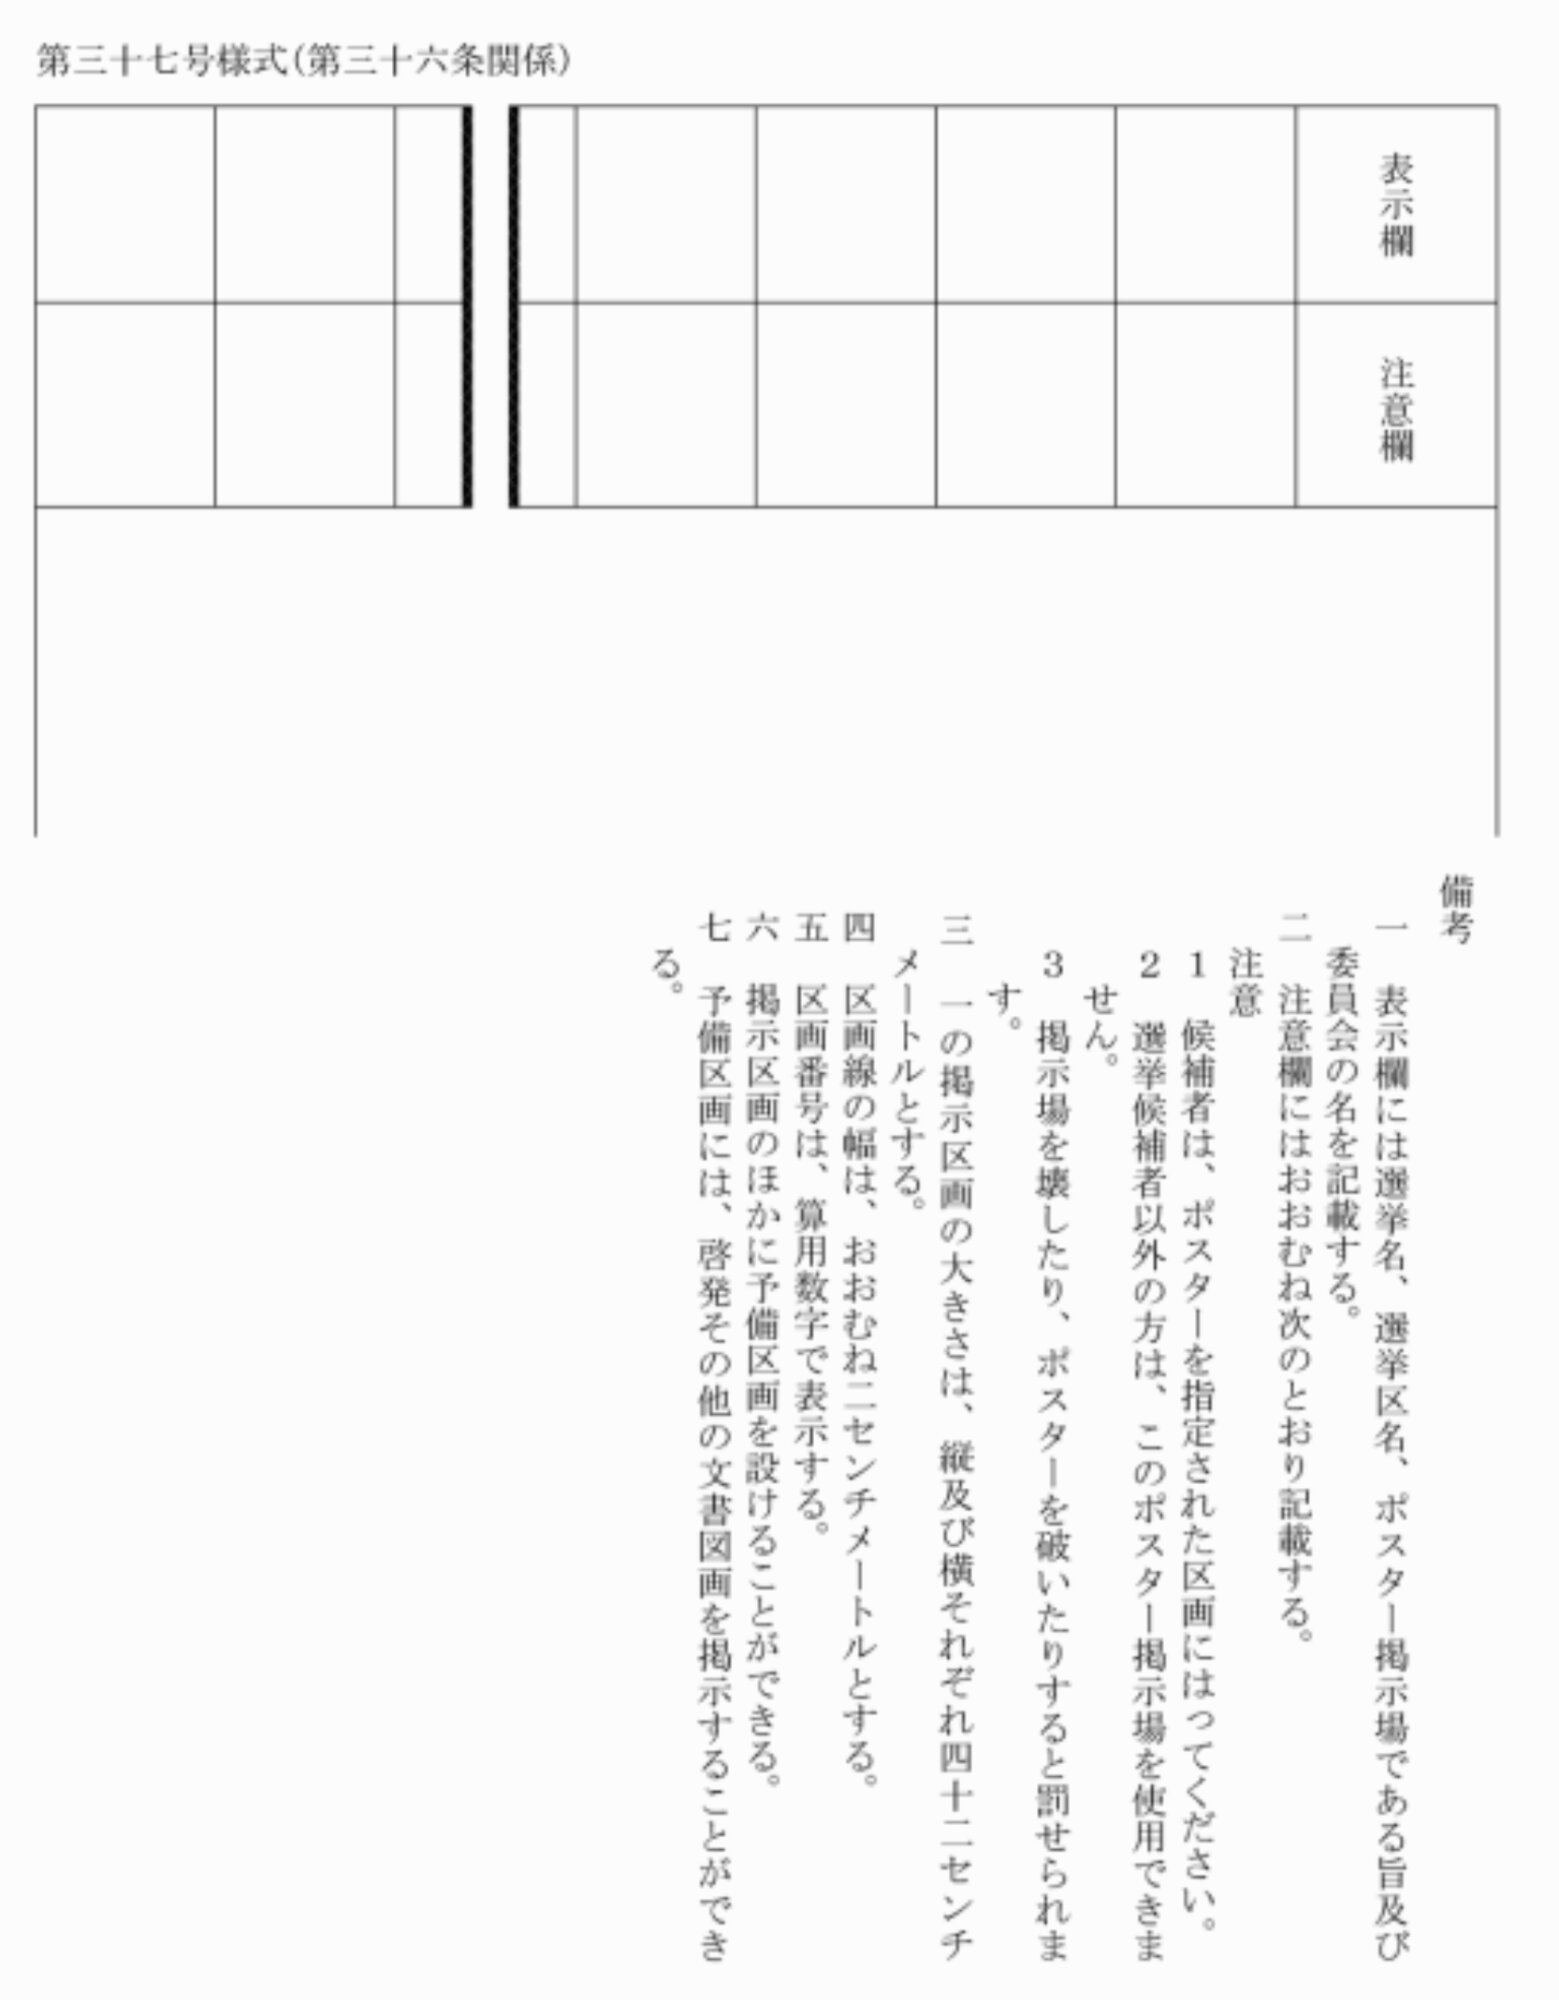 東京都選挙執行規程に定められた「ポスター掲示場」の様式